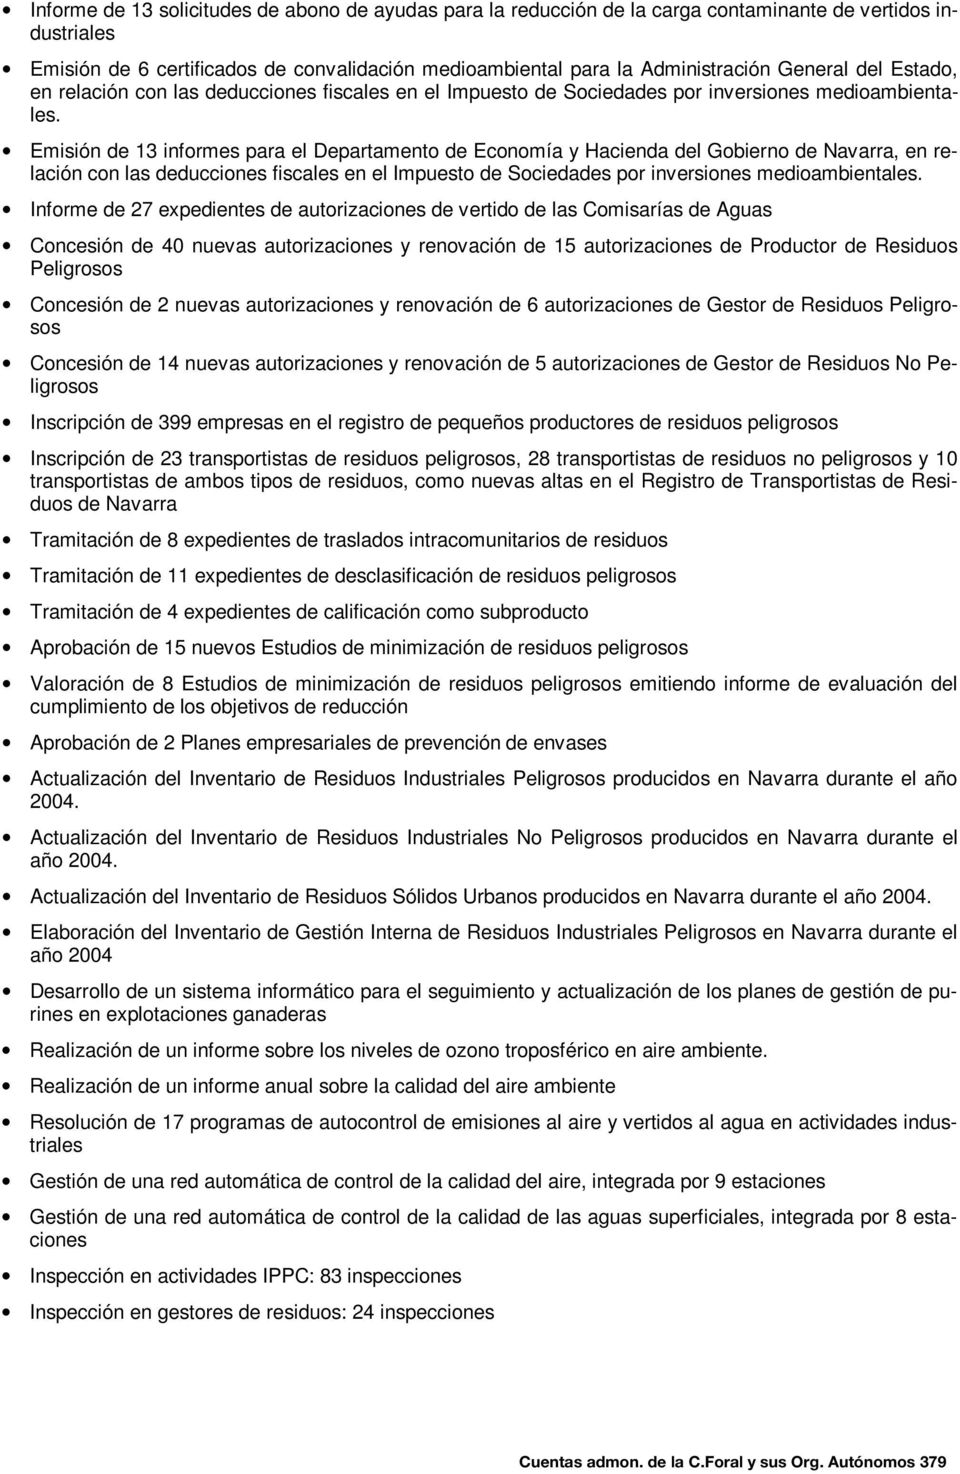 Emisión de 13 informes para el Departamento de Economía y Hacienda del Gobierno de Navarra, en relación con las deducciones fiscales en el Impuesto de Sociedades por inversiones medioambientales.